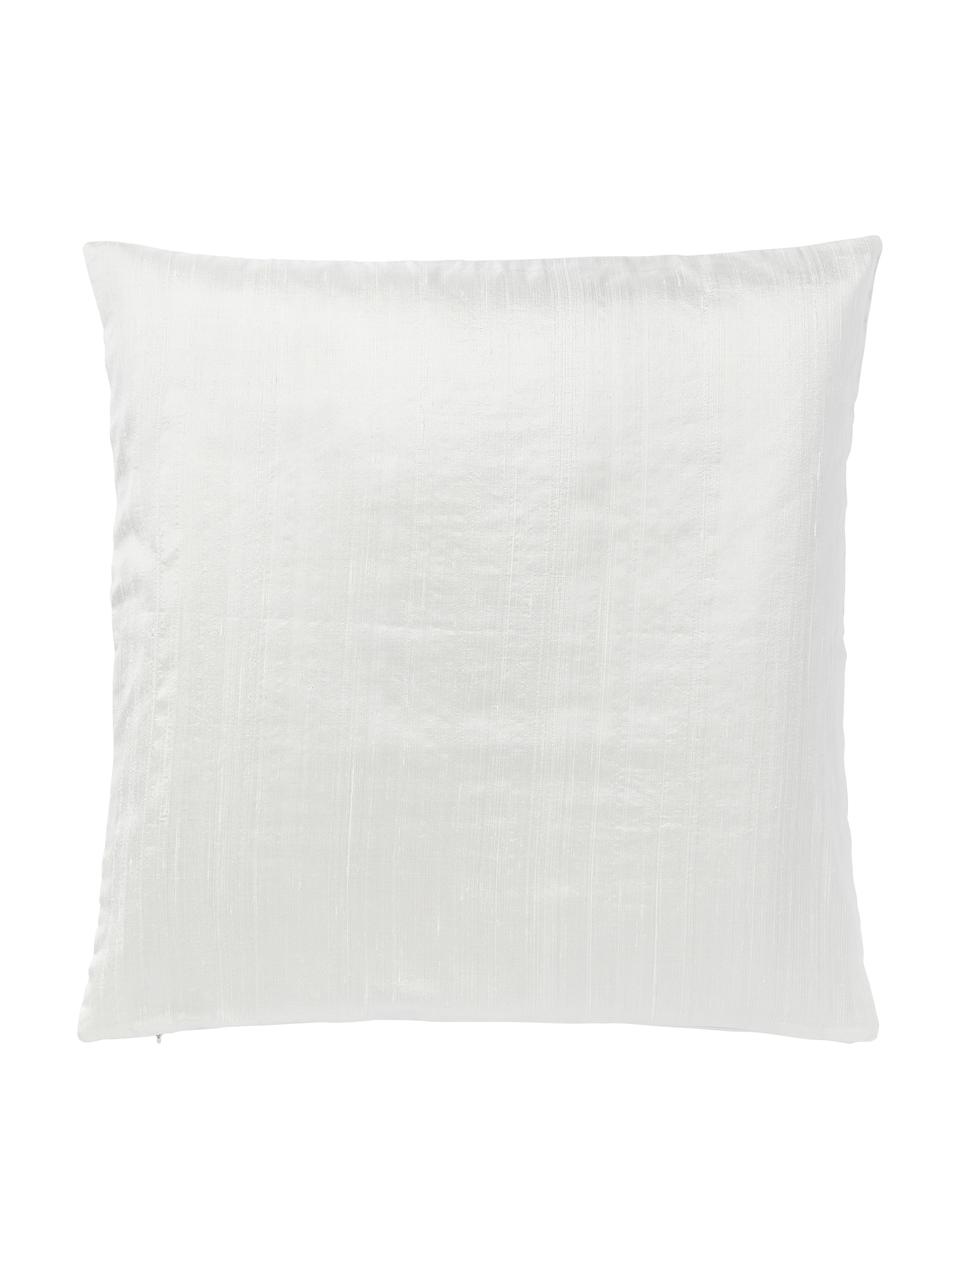 Funda de cojín de algodón y seda Aryane, Parte delantera: 100% seda, Parte trasera: 100% algodón, Blanco, An 45 x L 45 cm